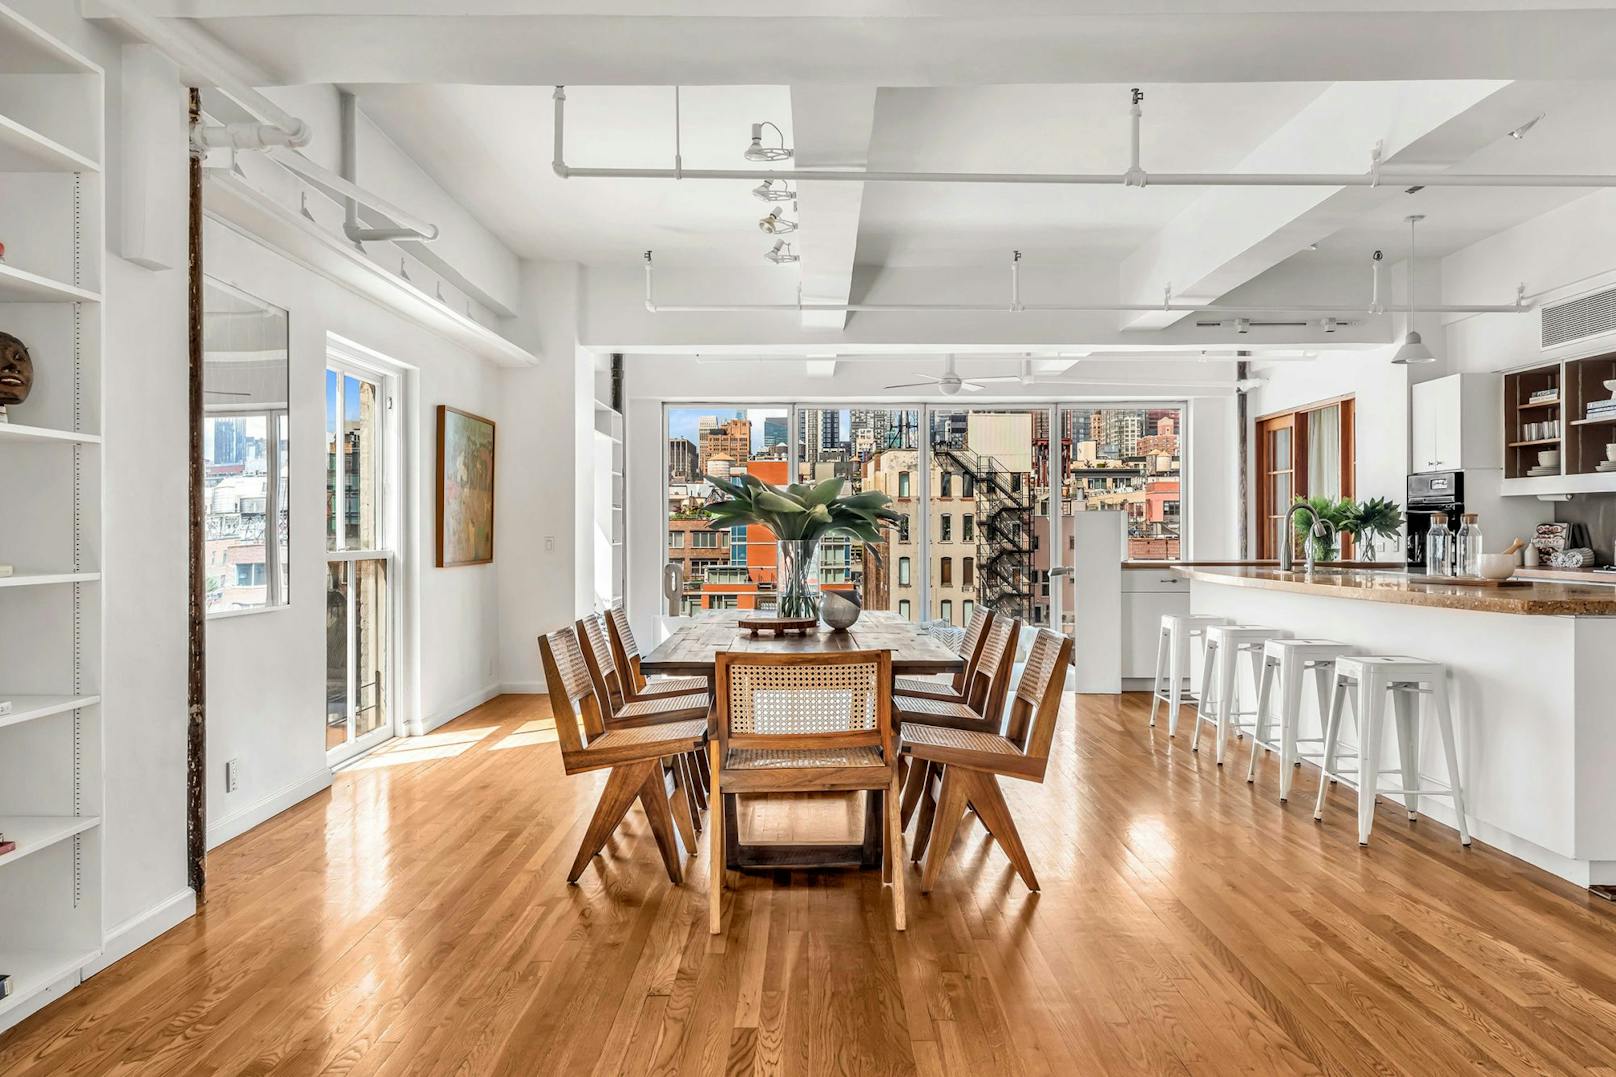 Susan Sarandon verbrachte in der 563 Quadratmeter große Wohnung im New Yorker Stadtteil Chelsea 30 Jahre ihres Lebens.<br>